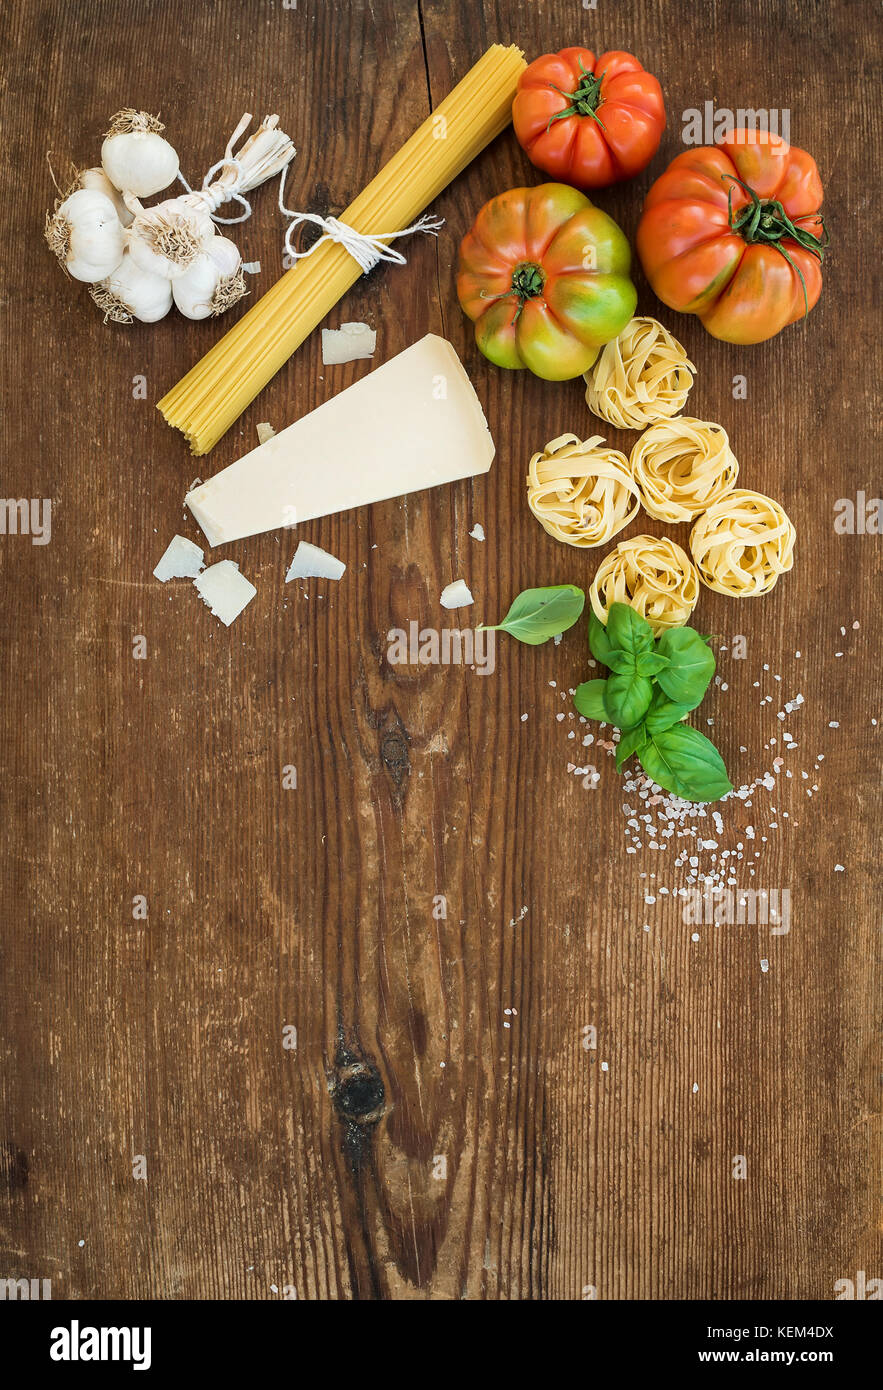 Zutaten zum Kochen Pasta Spaghetti, Tagliatelle, Knoblauch, Parmesan, Tomaten und frischem Basilikum auf rustikalen Holzmöbeln Hintergrund, Ansicht von oben, kopieren. Stockfoto